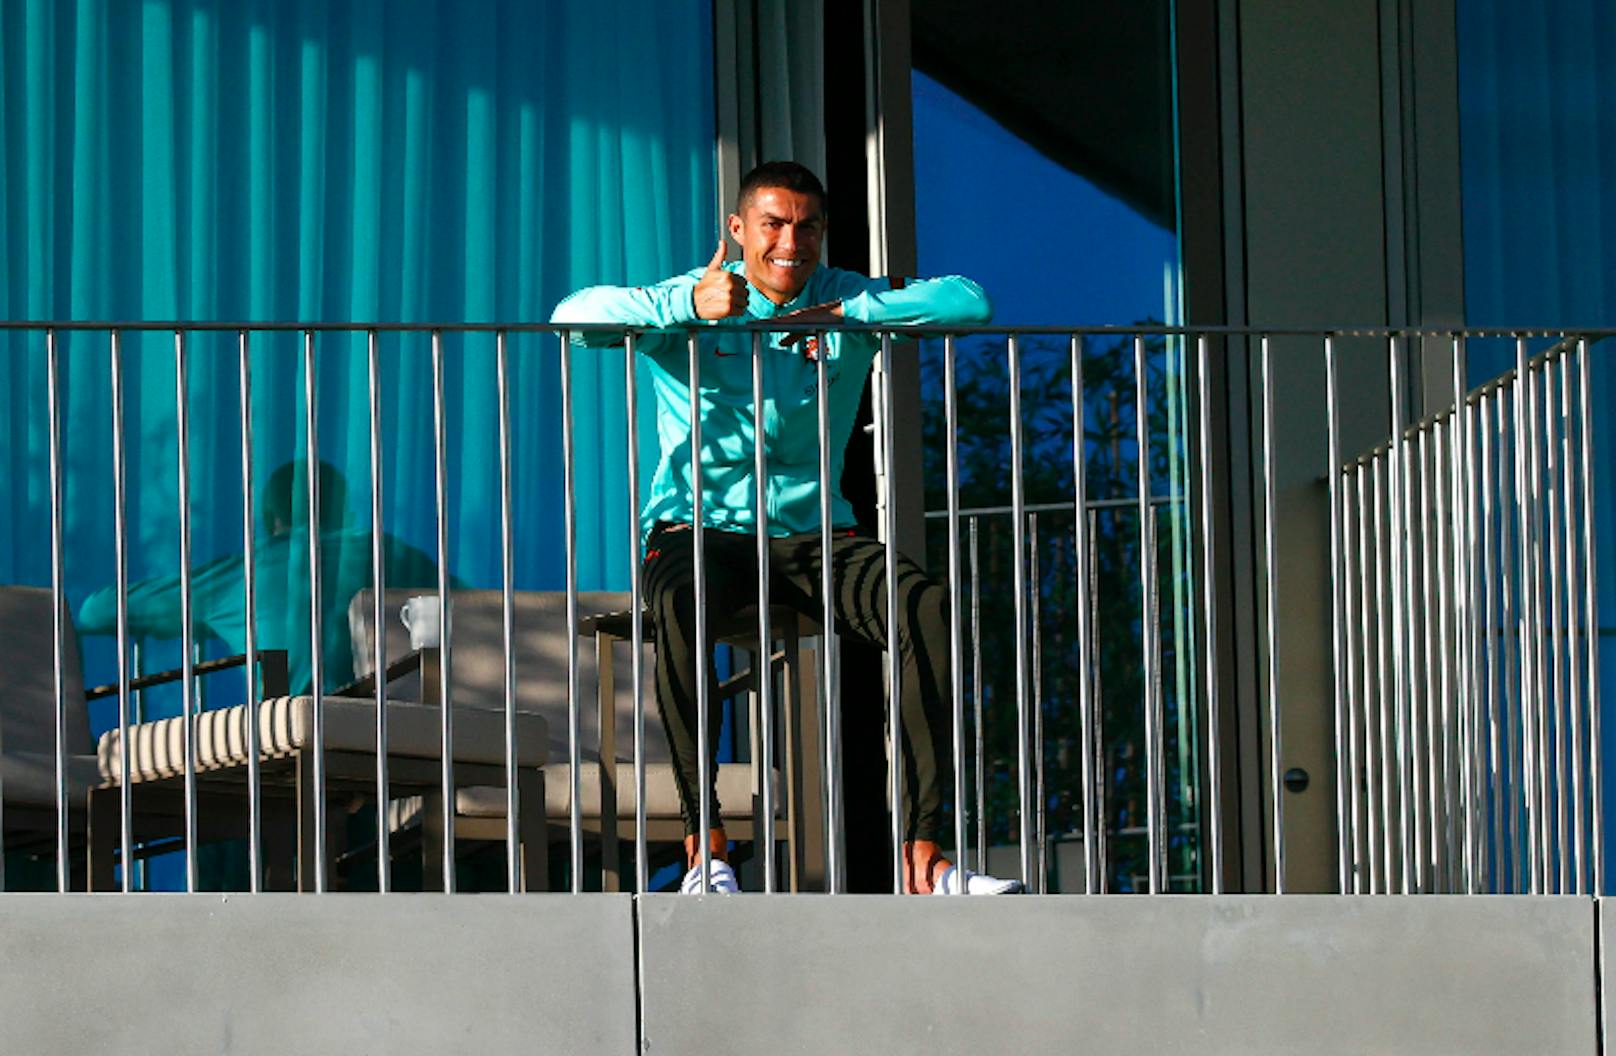 Cristiano Ronaldo beruhigt seine Fans, der Daumen zeigt nach oben.